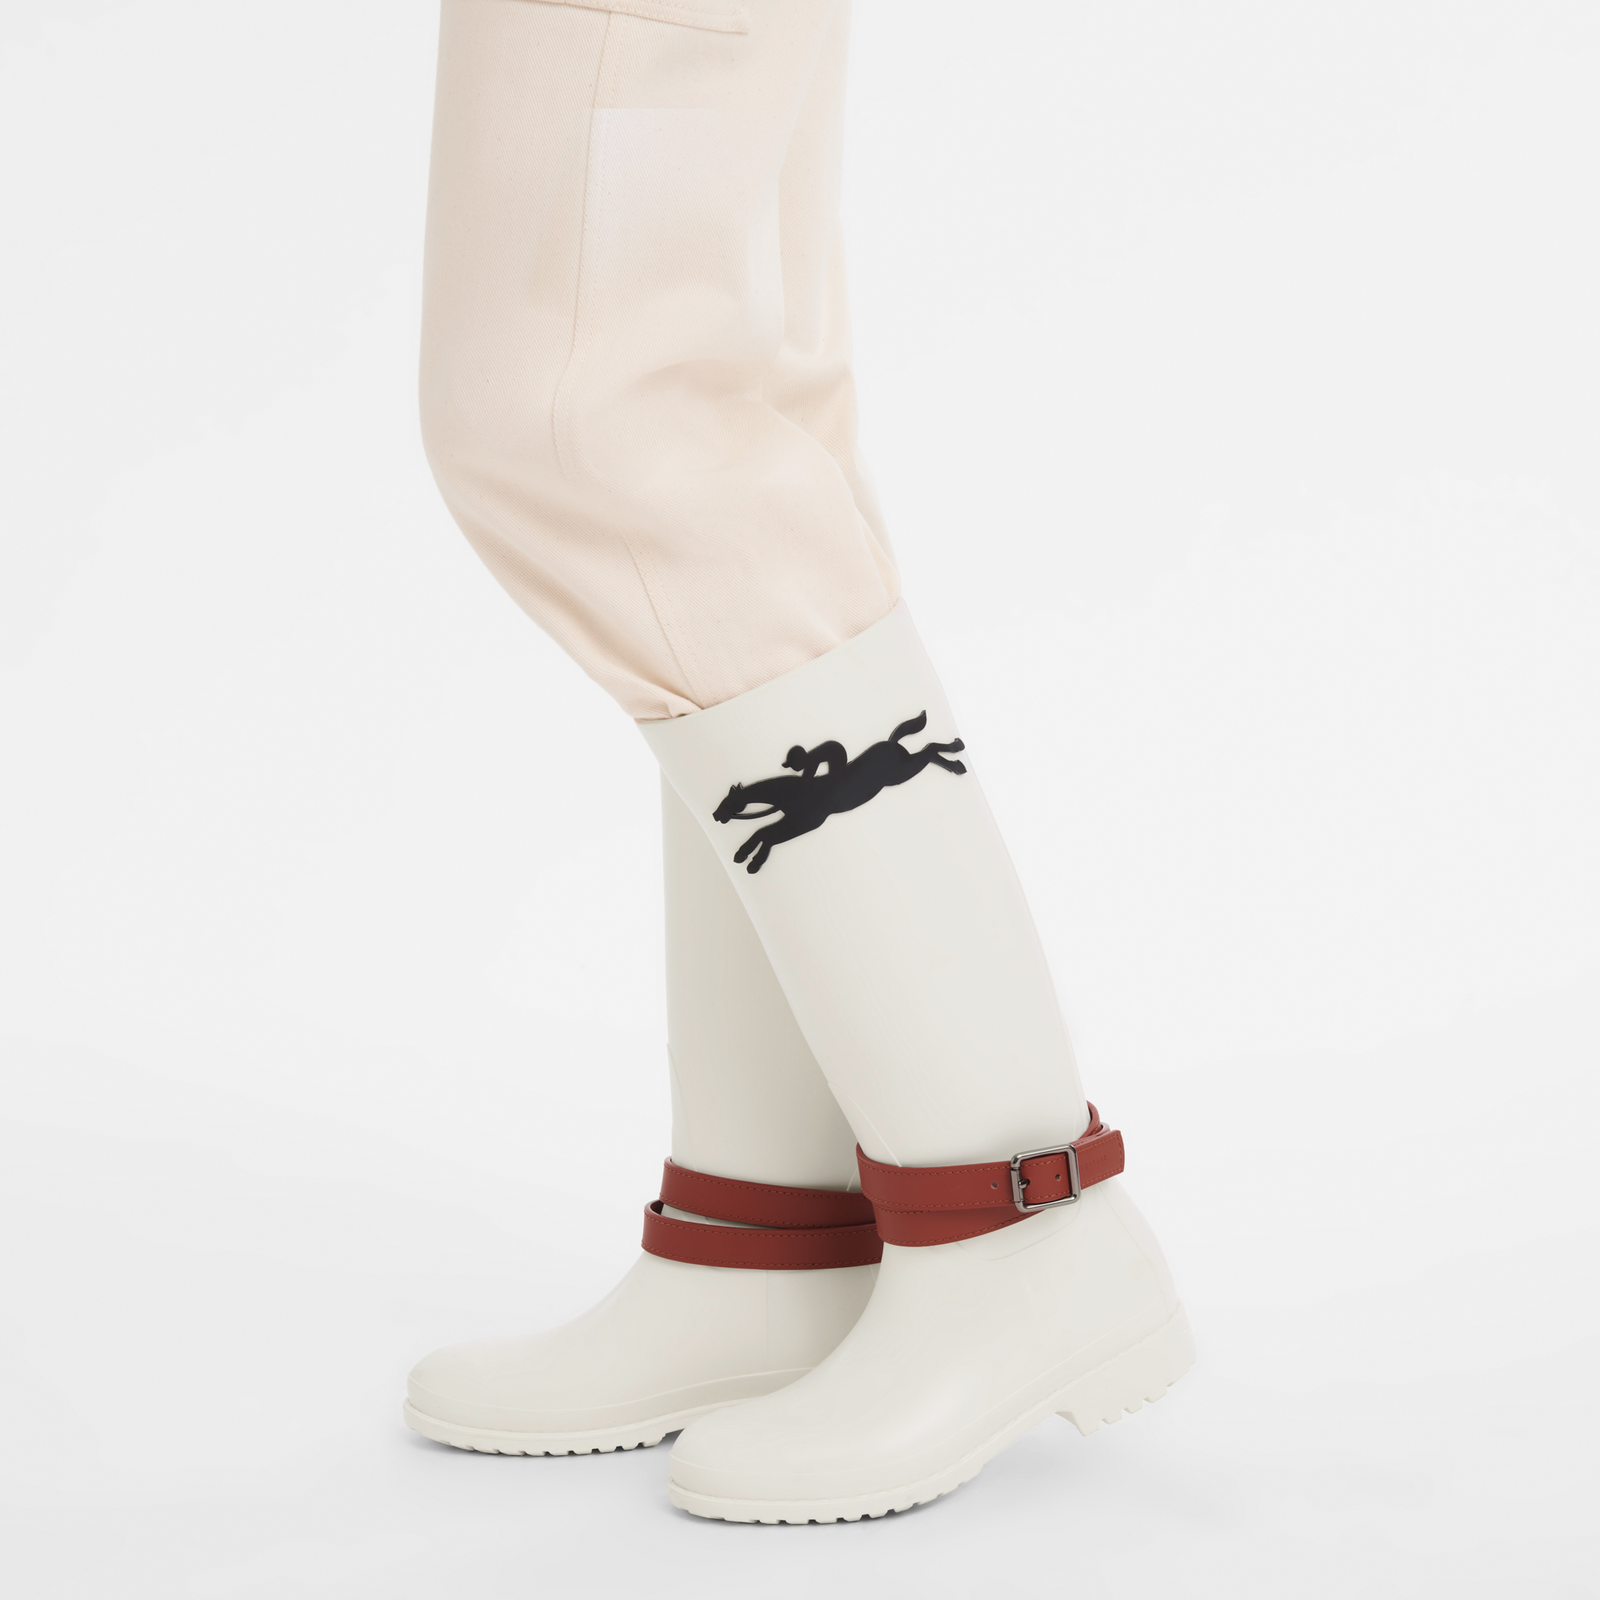 Cheval Longchamp Flache Stiefel, Elfenbein